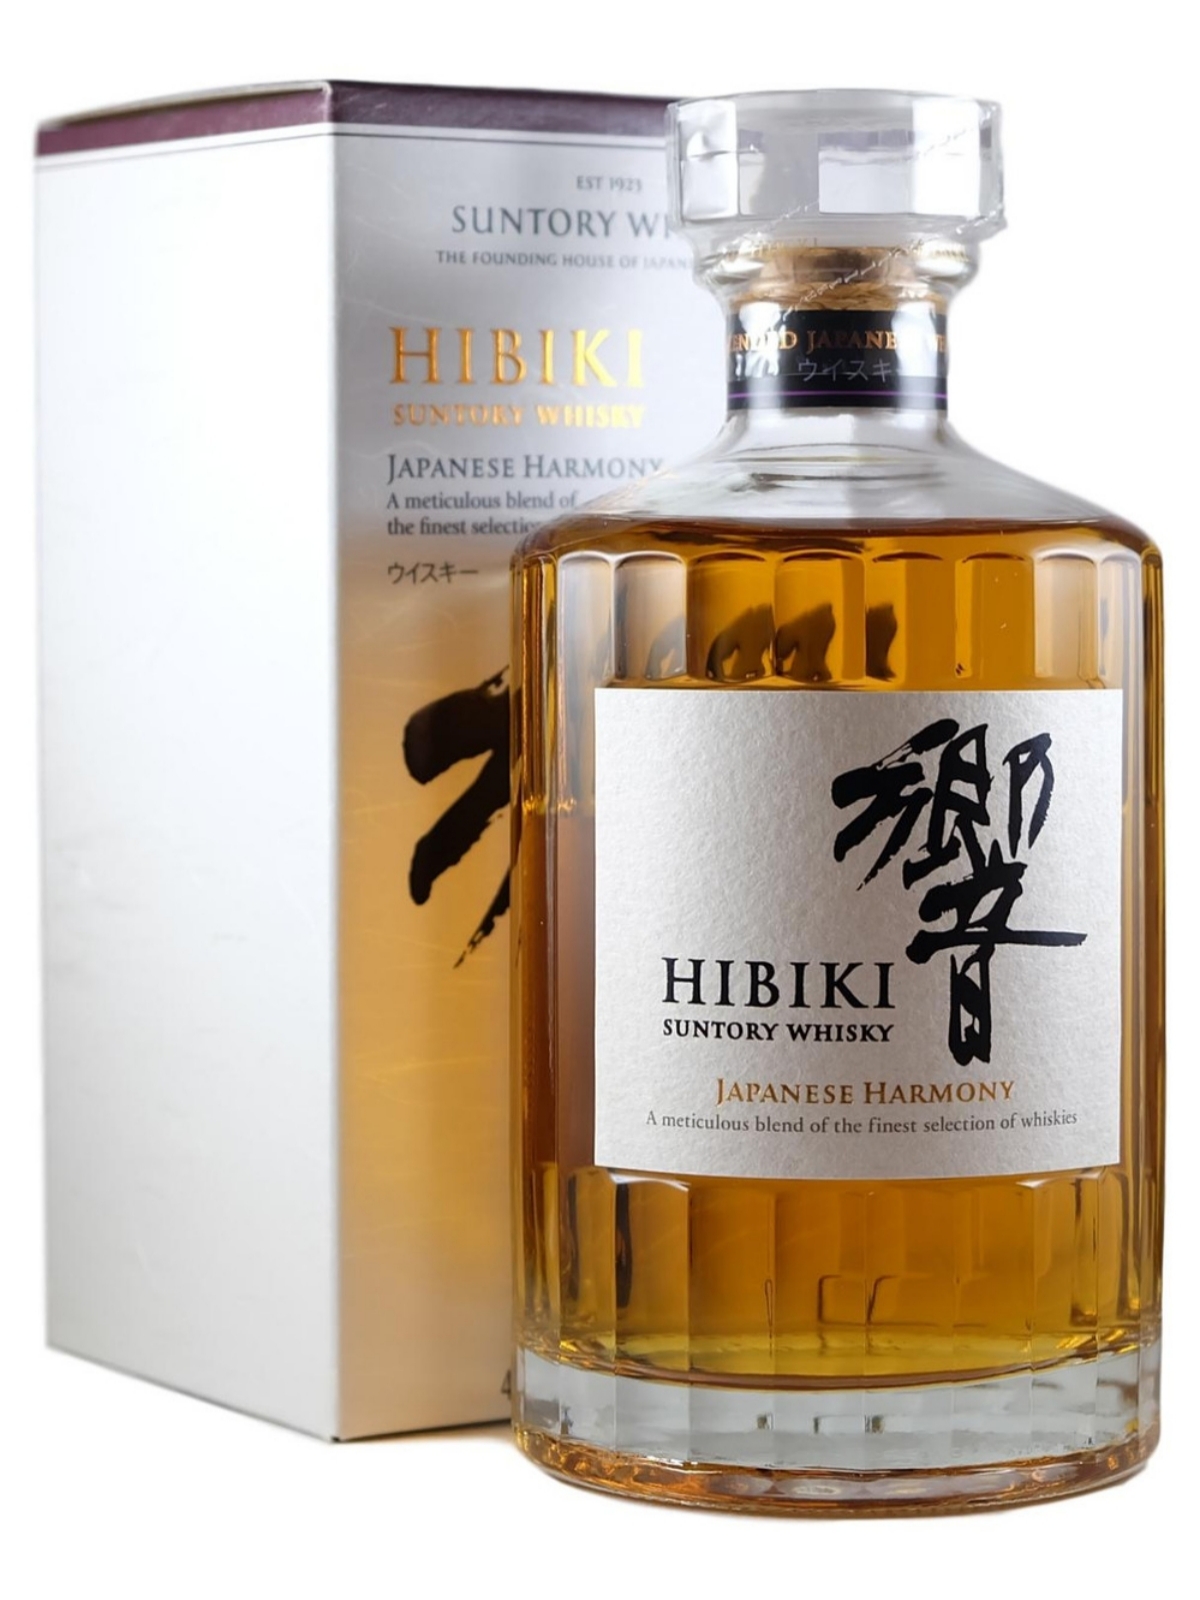 Japanese whisky